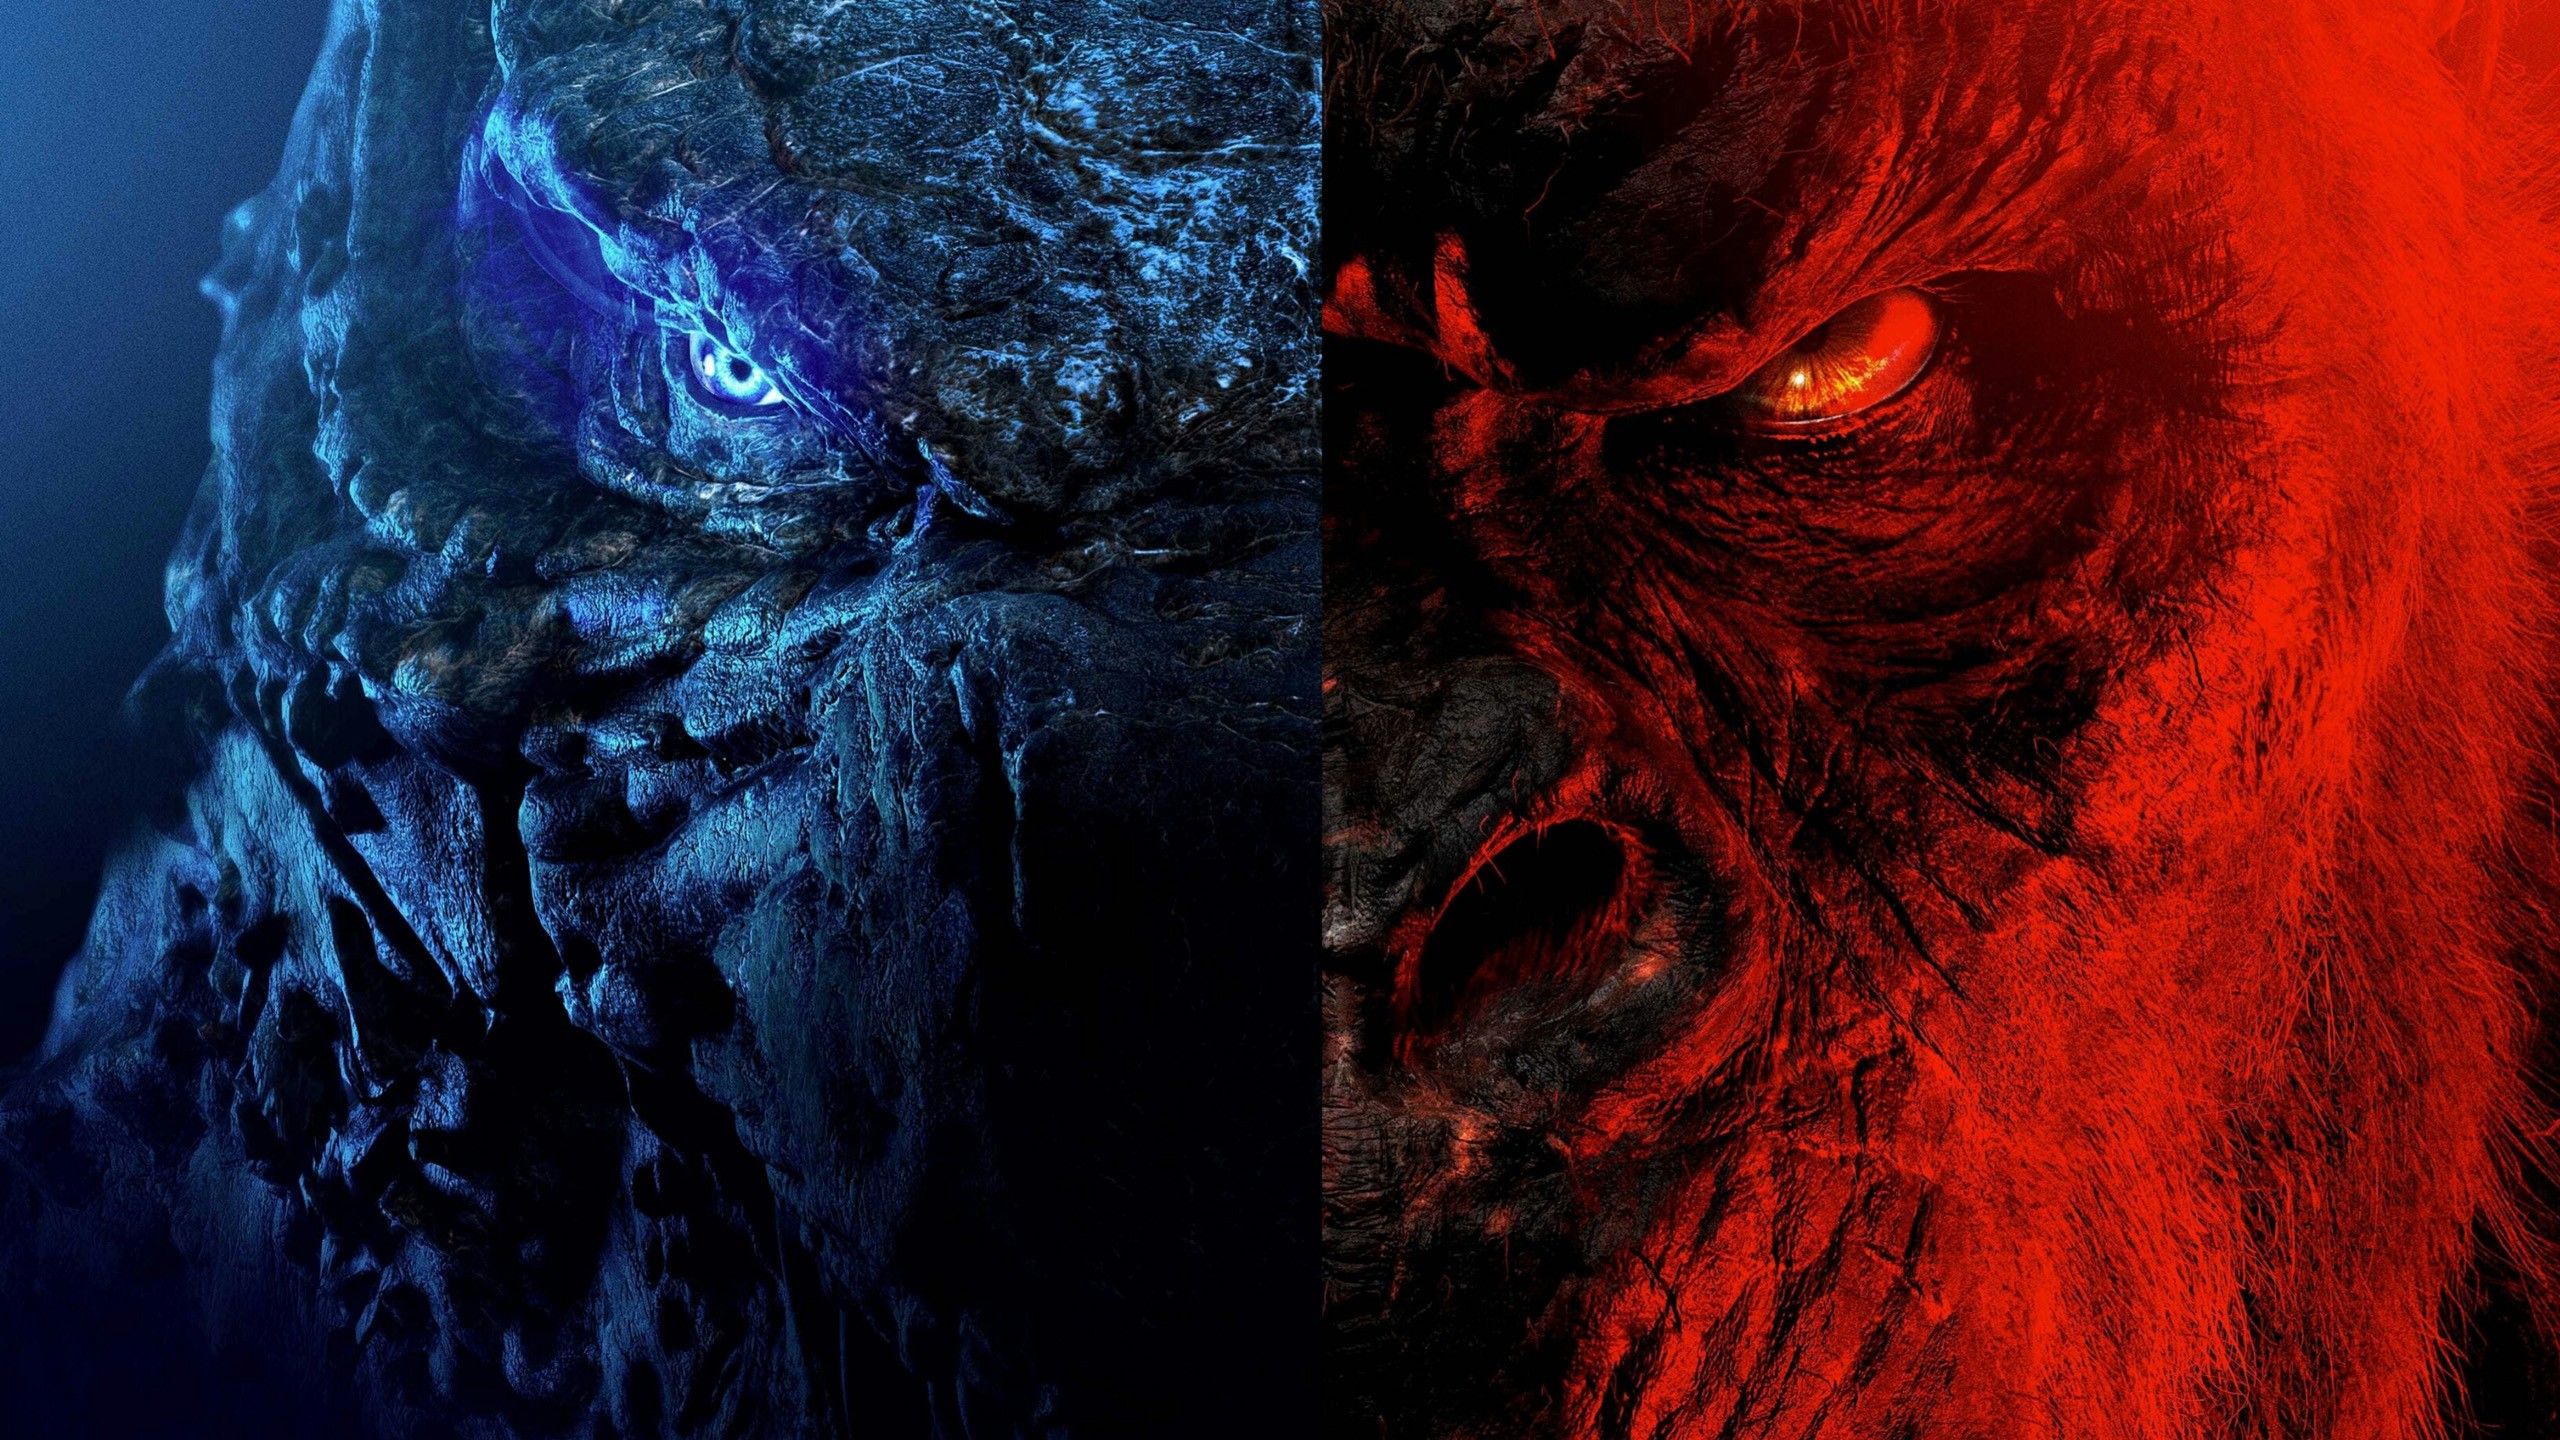 King Kong Vs Godzilla 4K Wallpapers - Wallpaper Cave